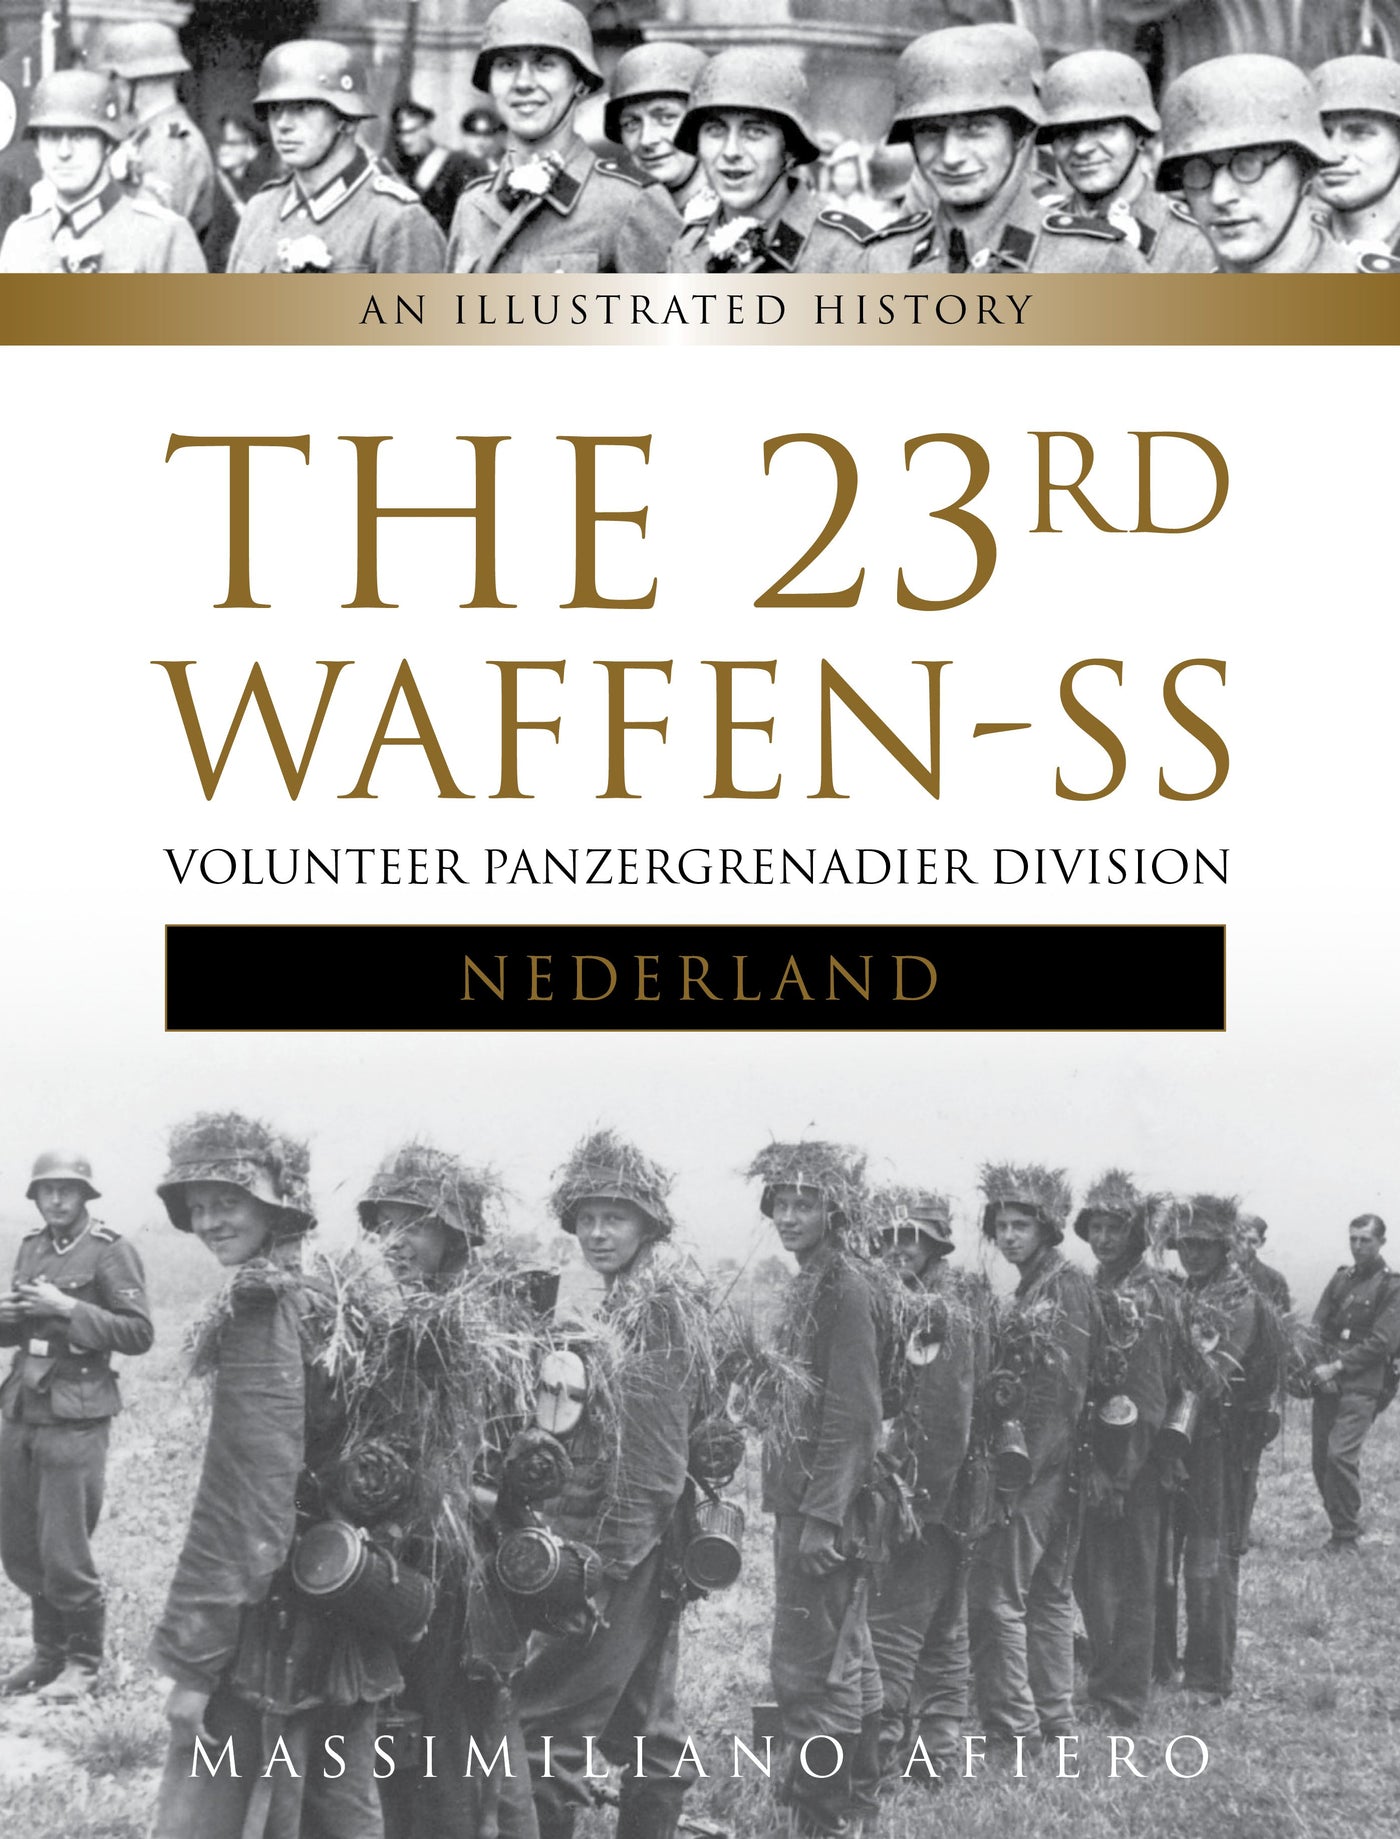 The 23rd Waffen-SS Volunteer Panzergrenadier Division "Nederland"